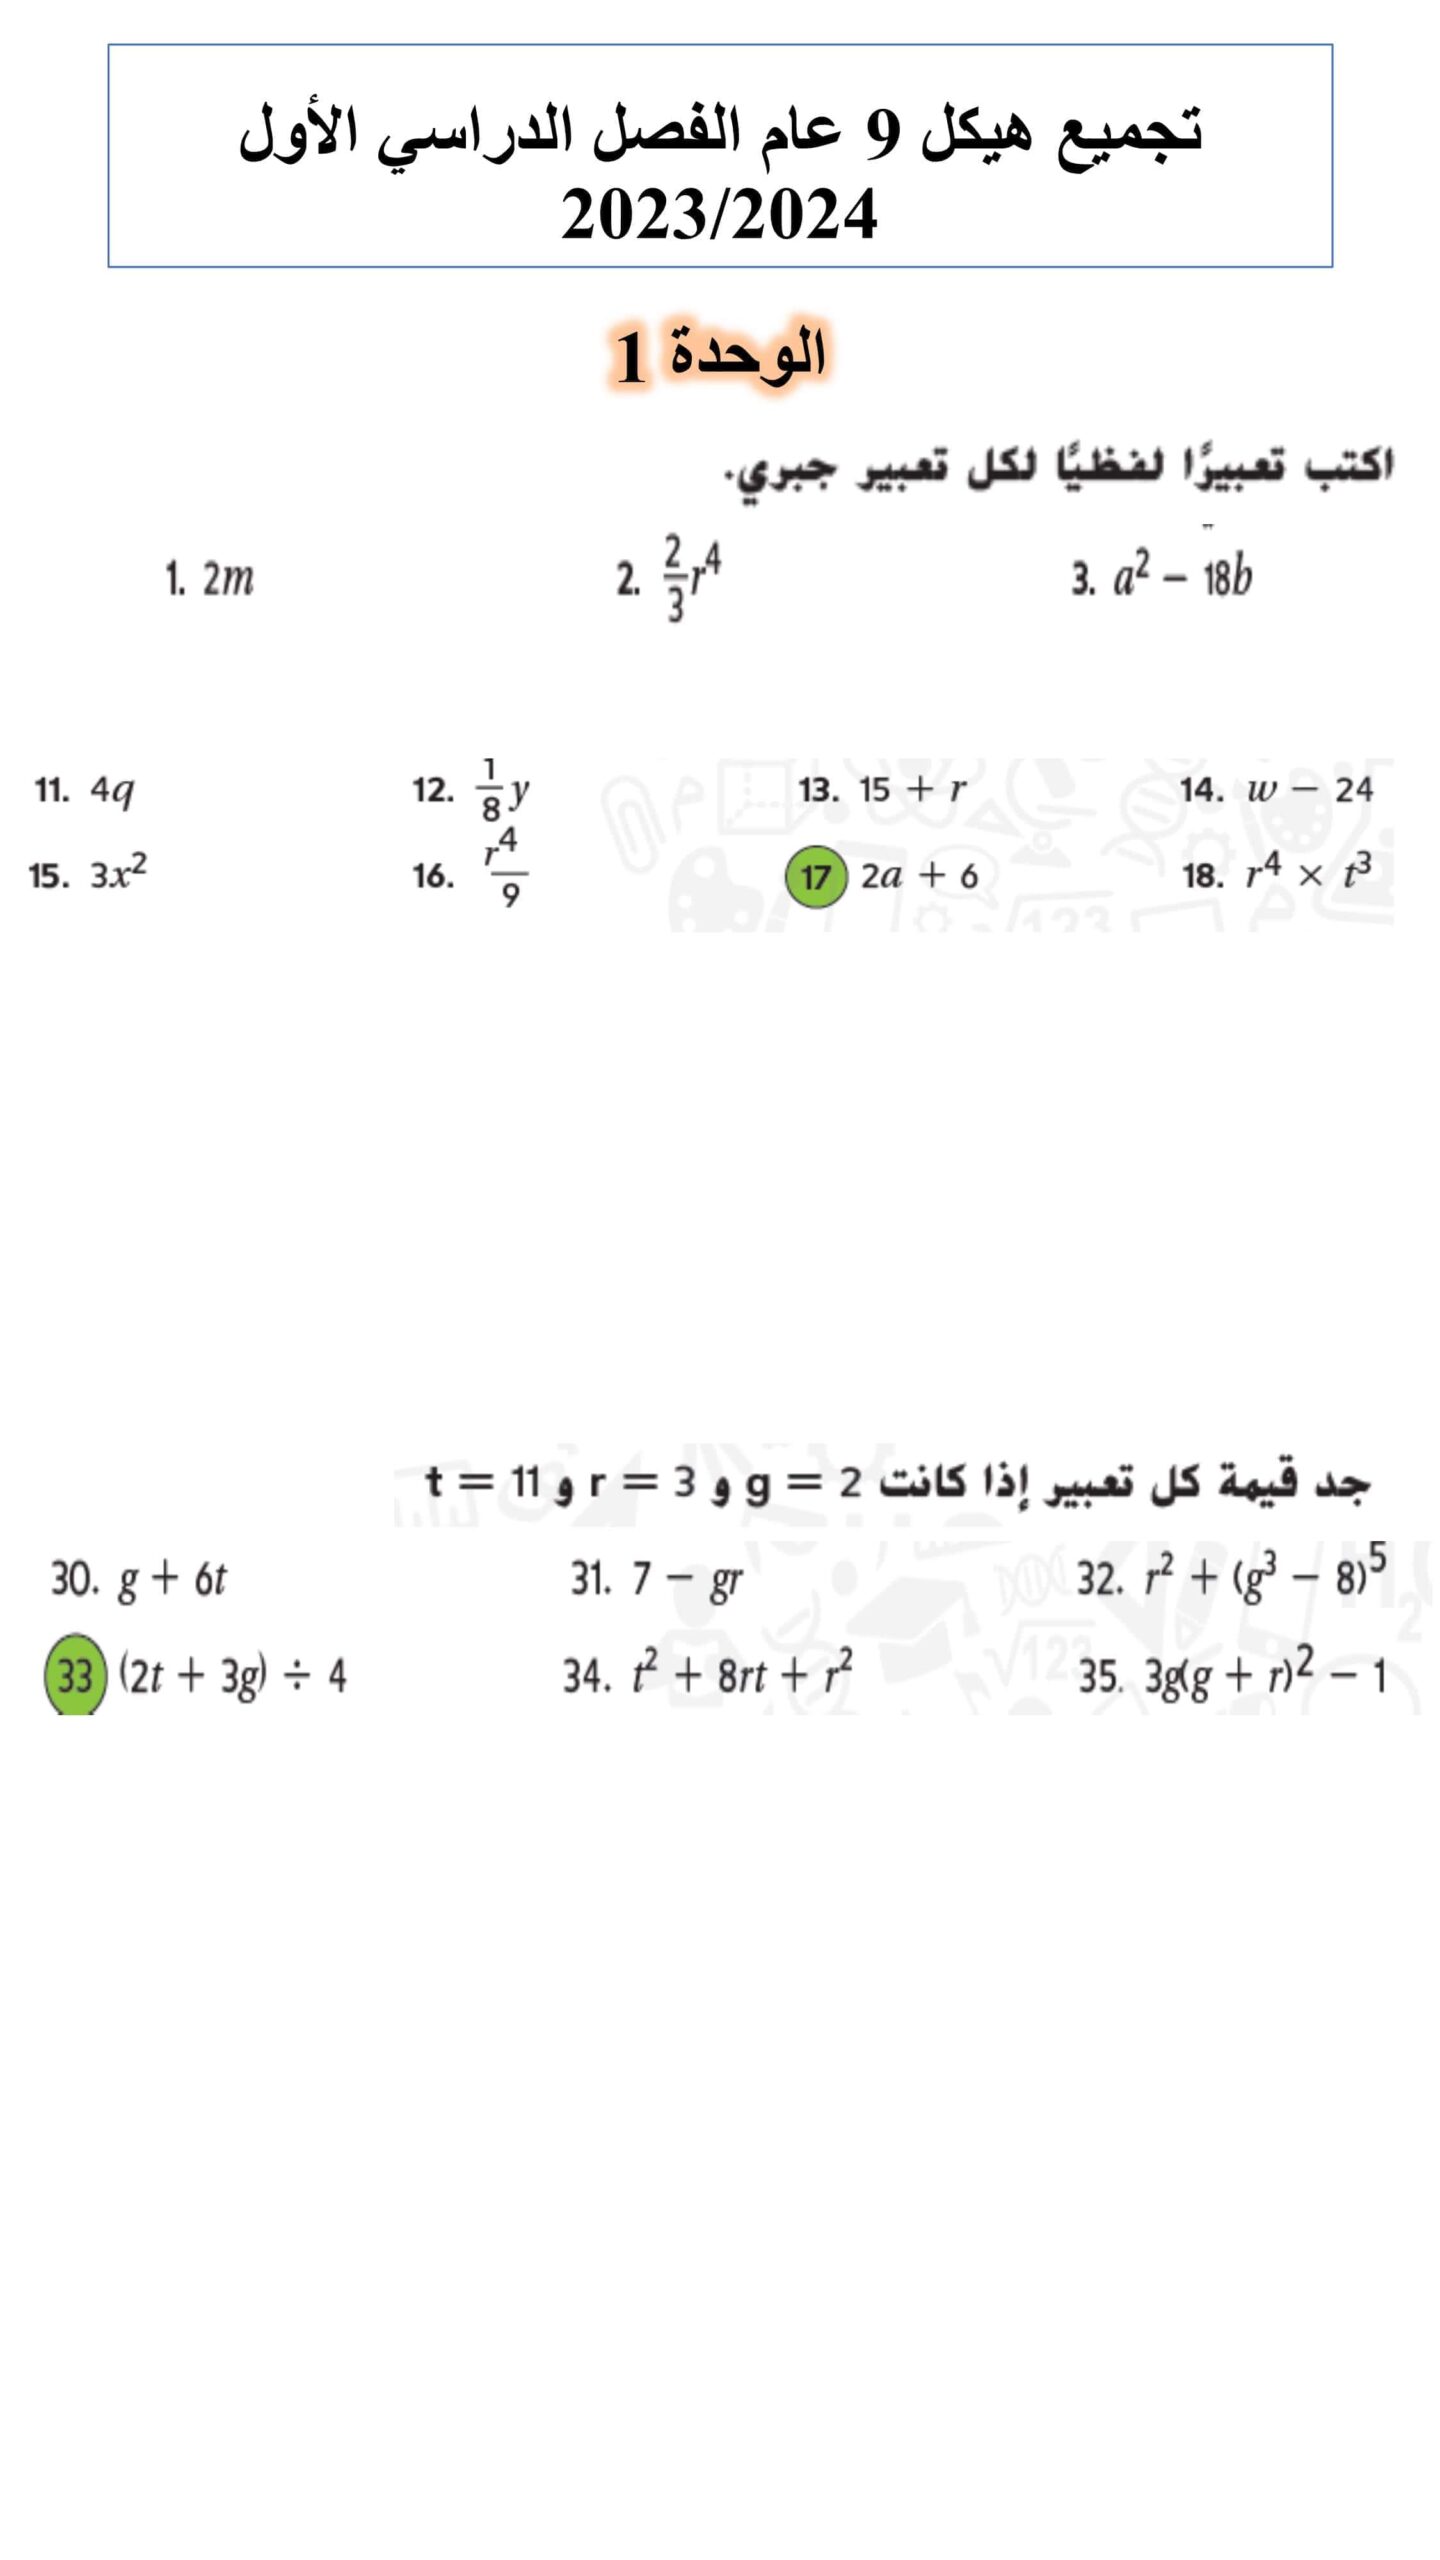 تجميع صفحات الهيكل الرياضيات المتكاملة الصف التاسع عام 